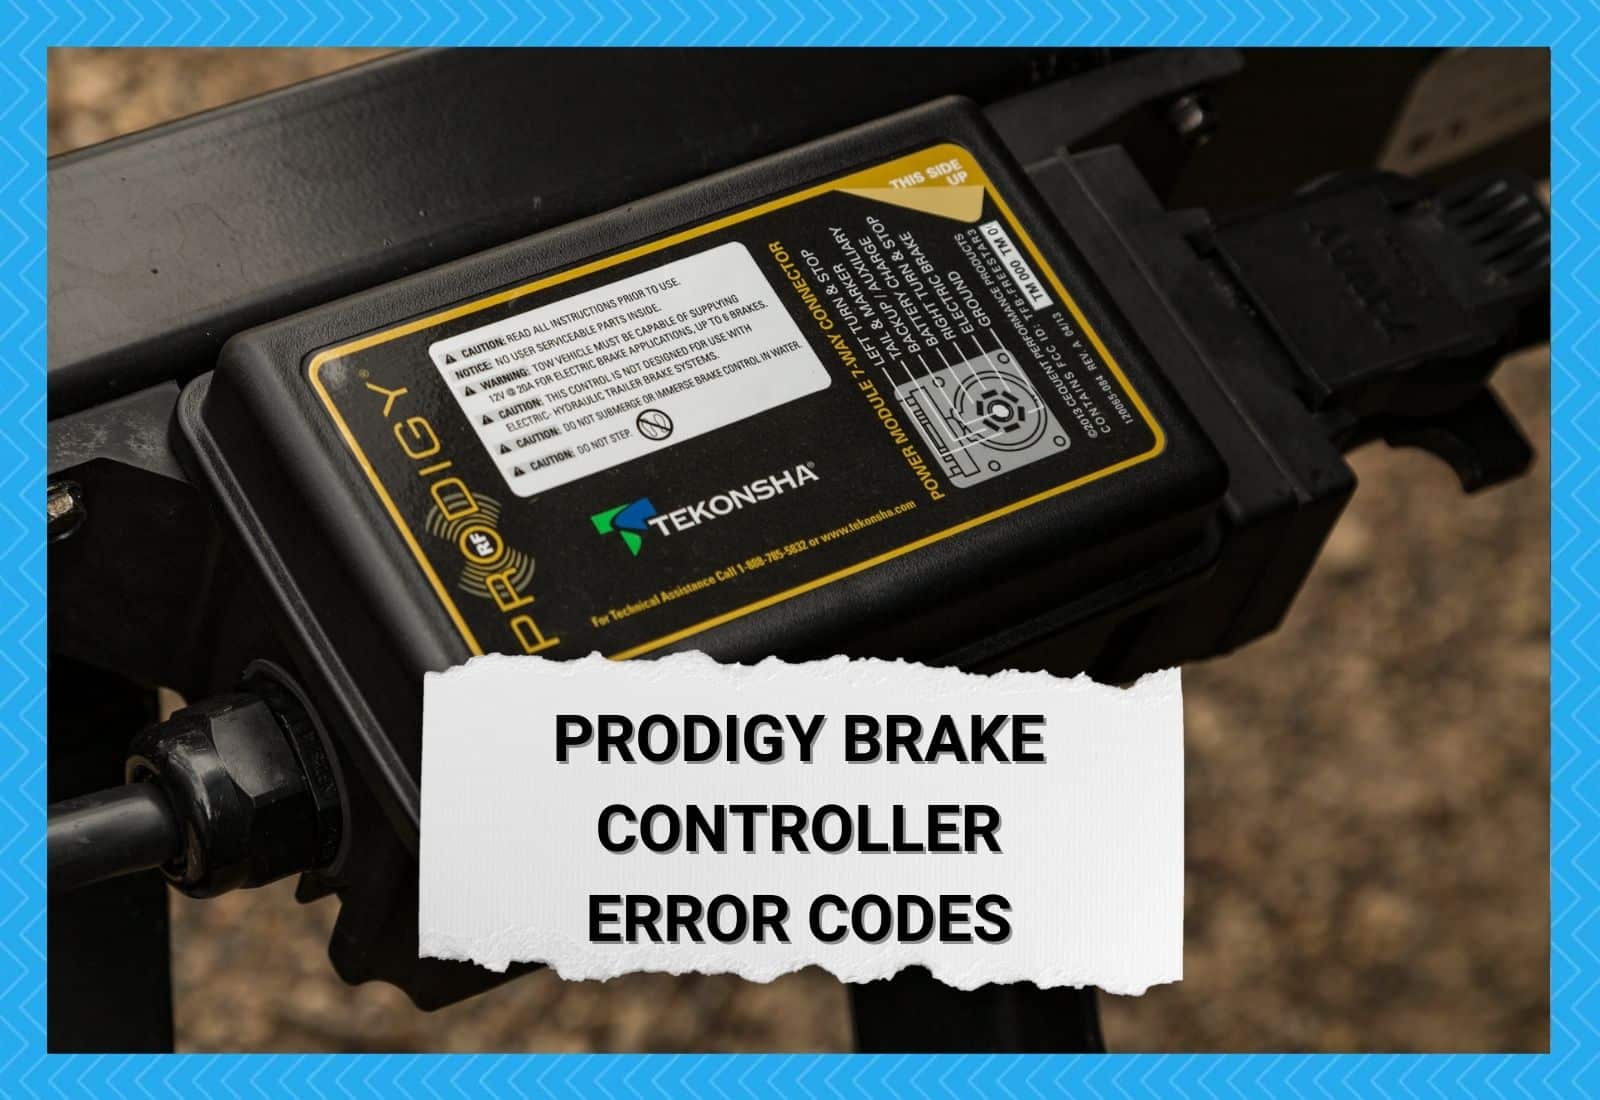 Prodigy Brake Controller Error Codes